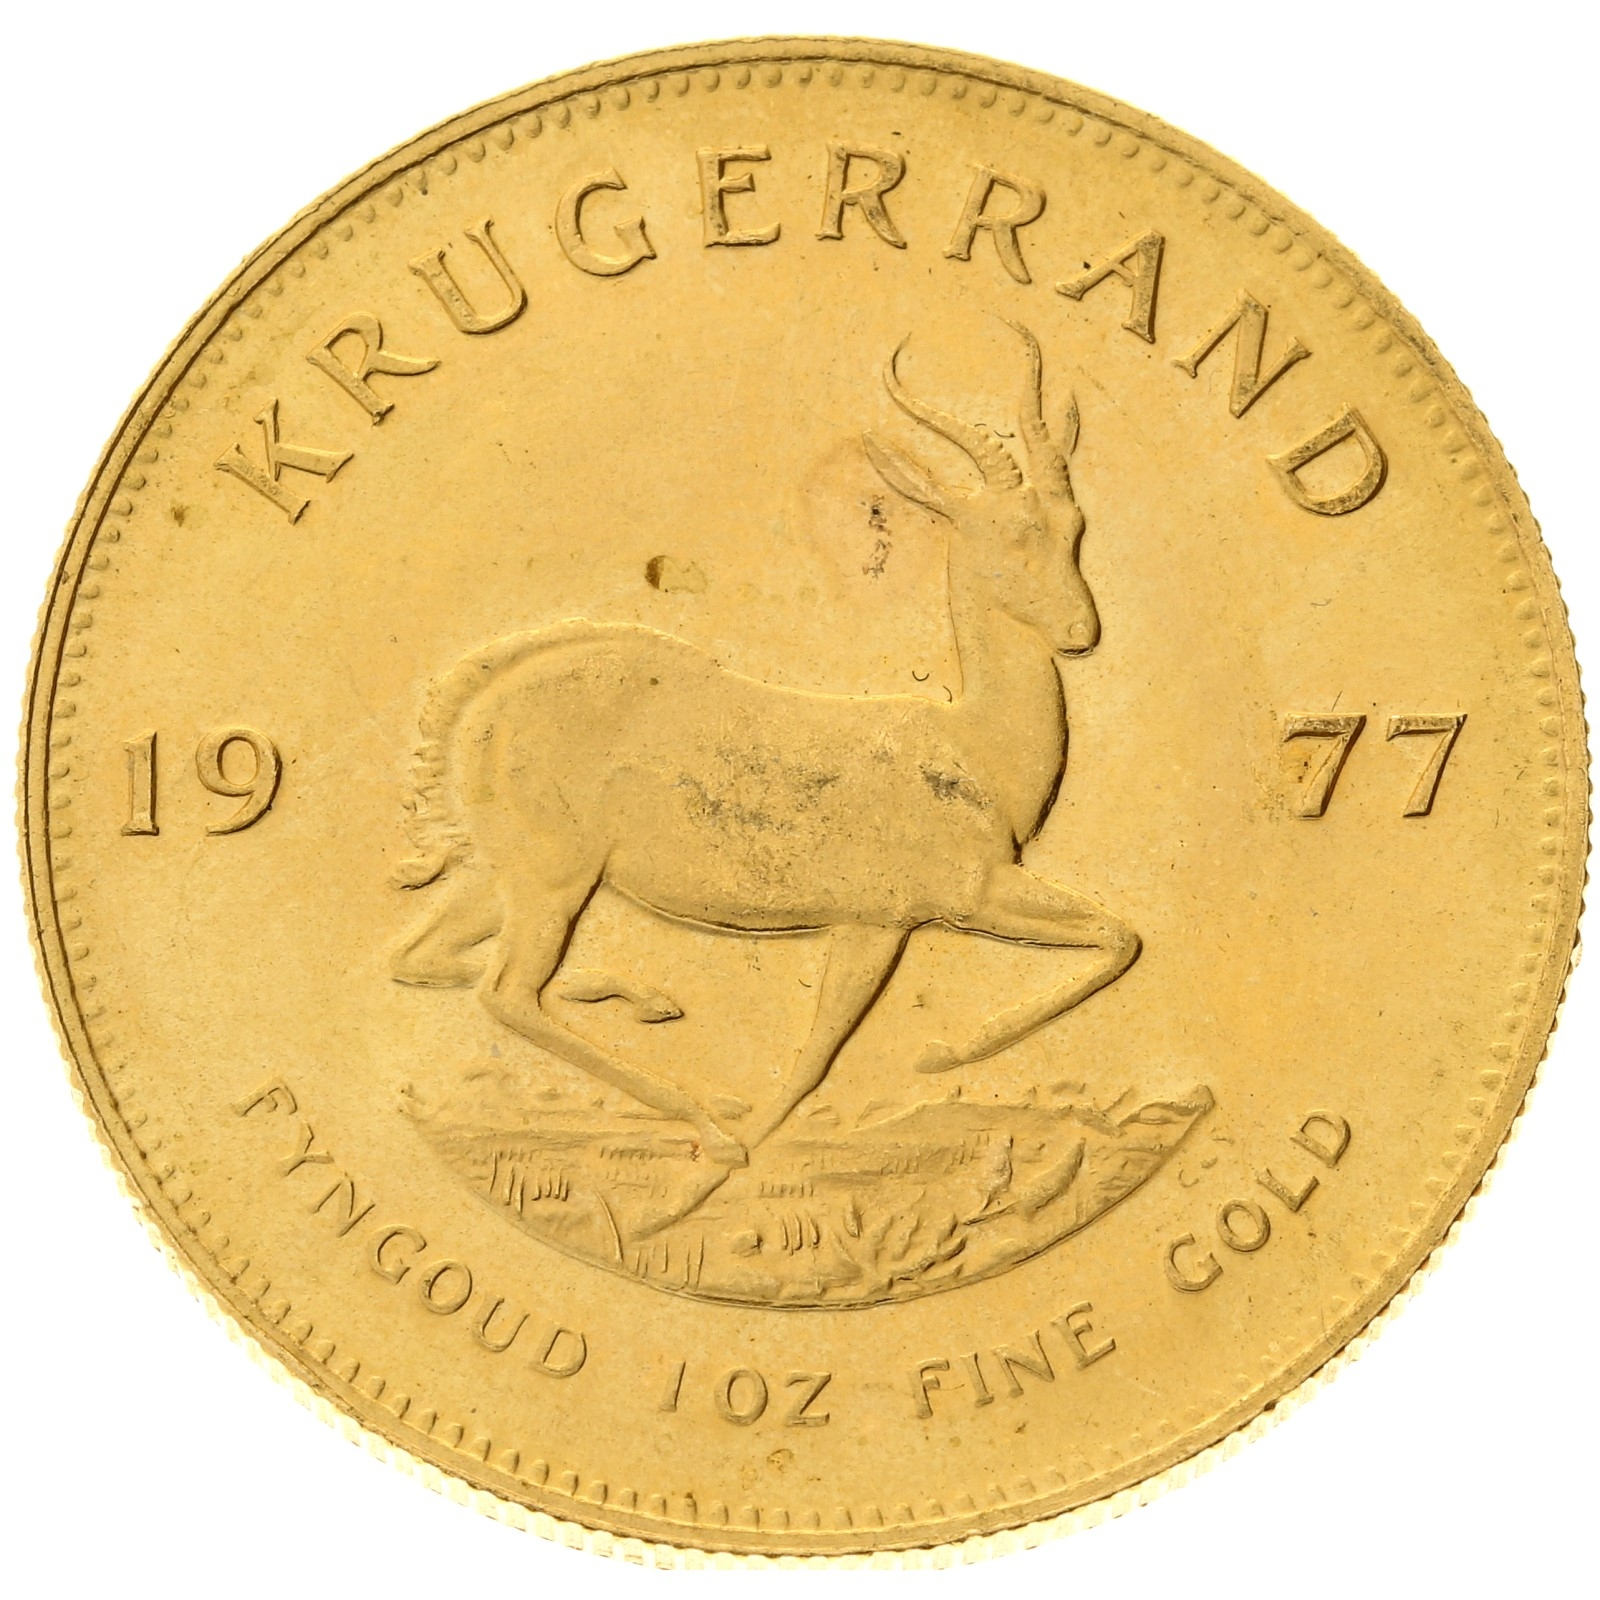 South Africa - 1 Krugerrand - 1977 - 1oz gold 